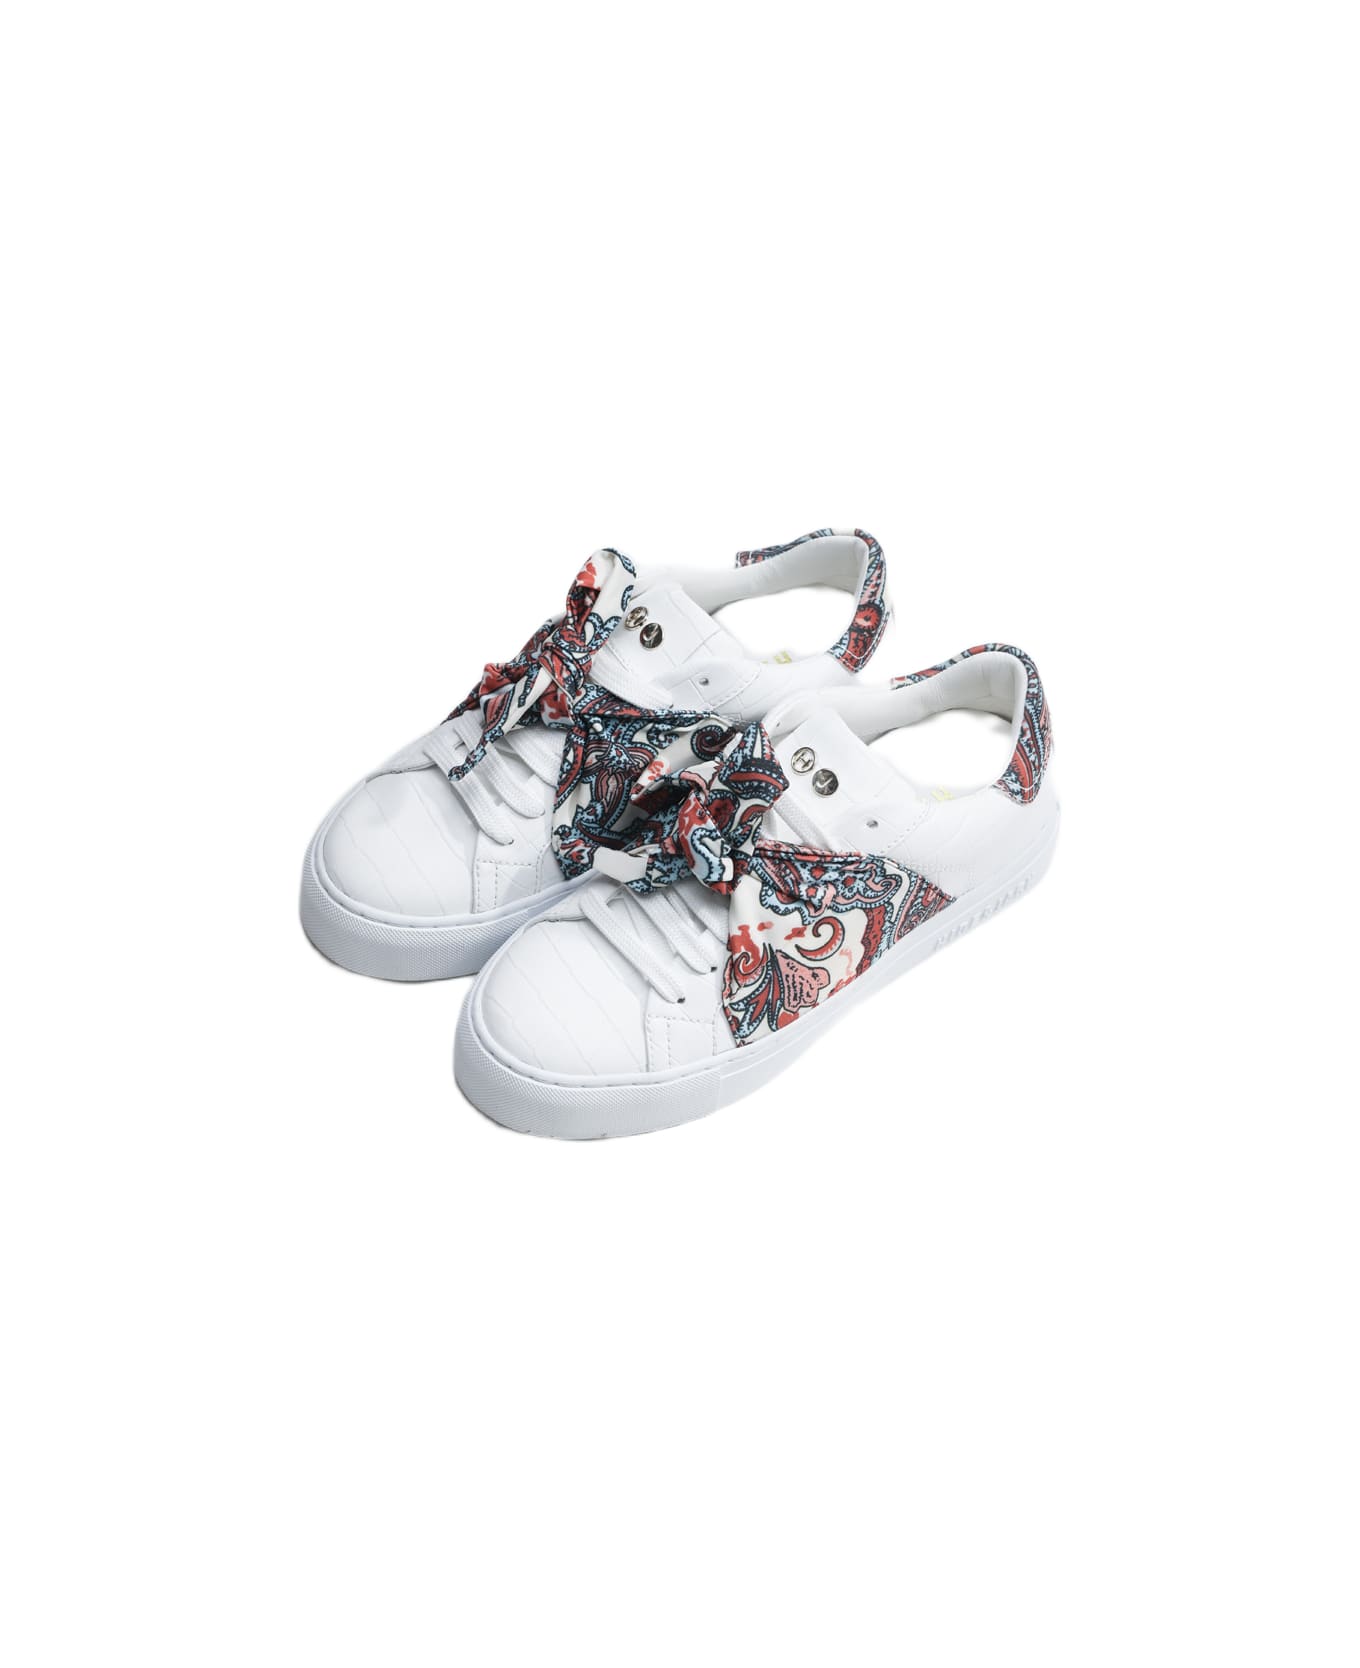 Hide&Jack Low Top Sneaker - Essence Foulard White